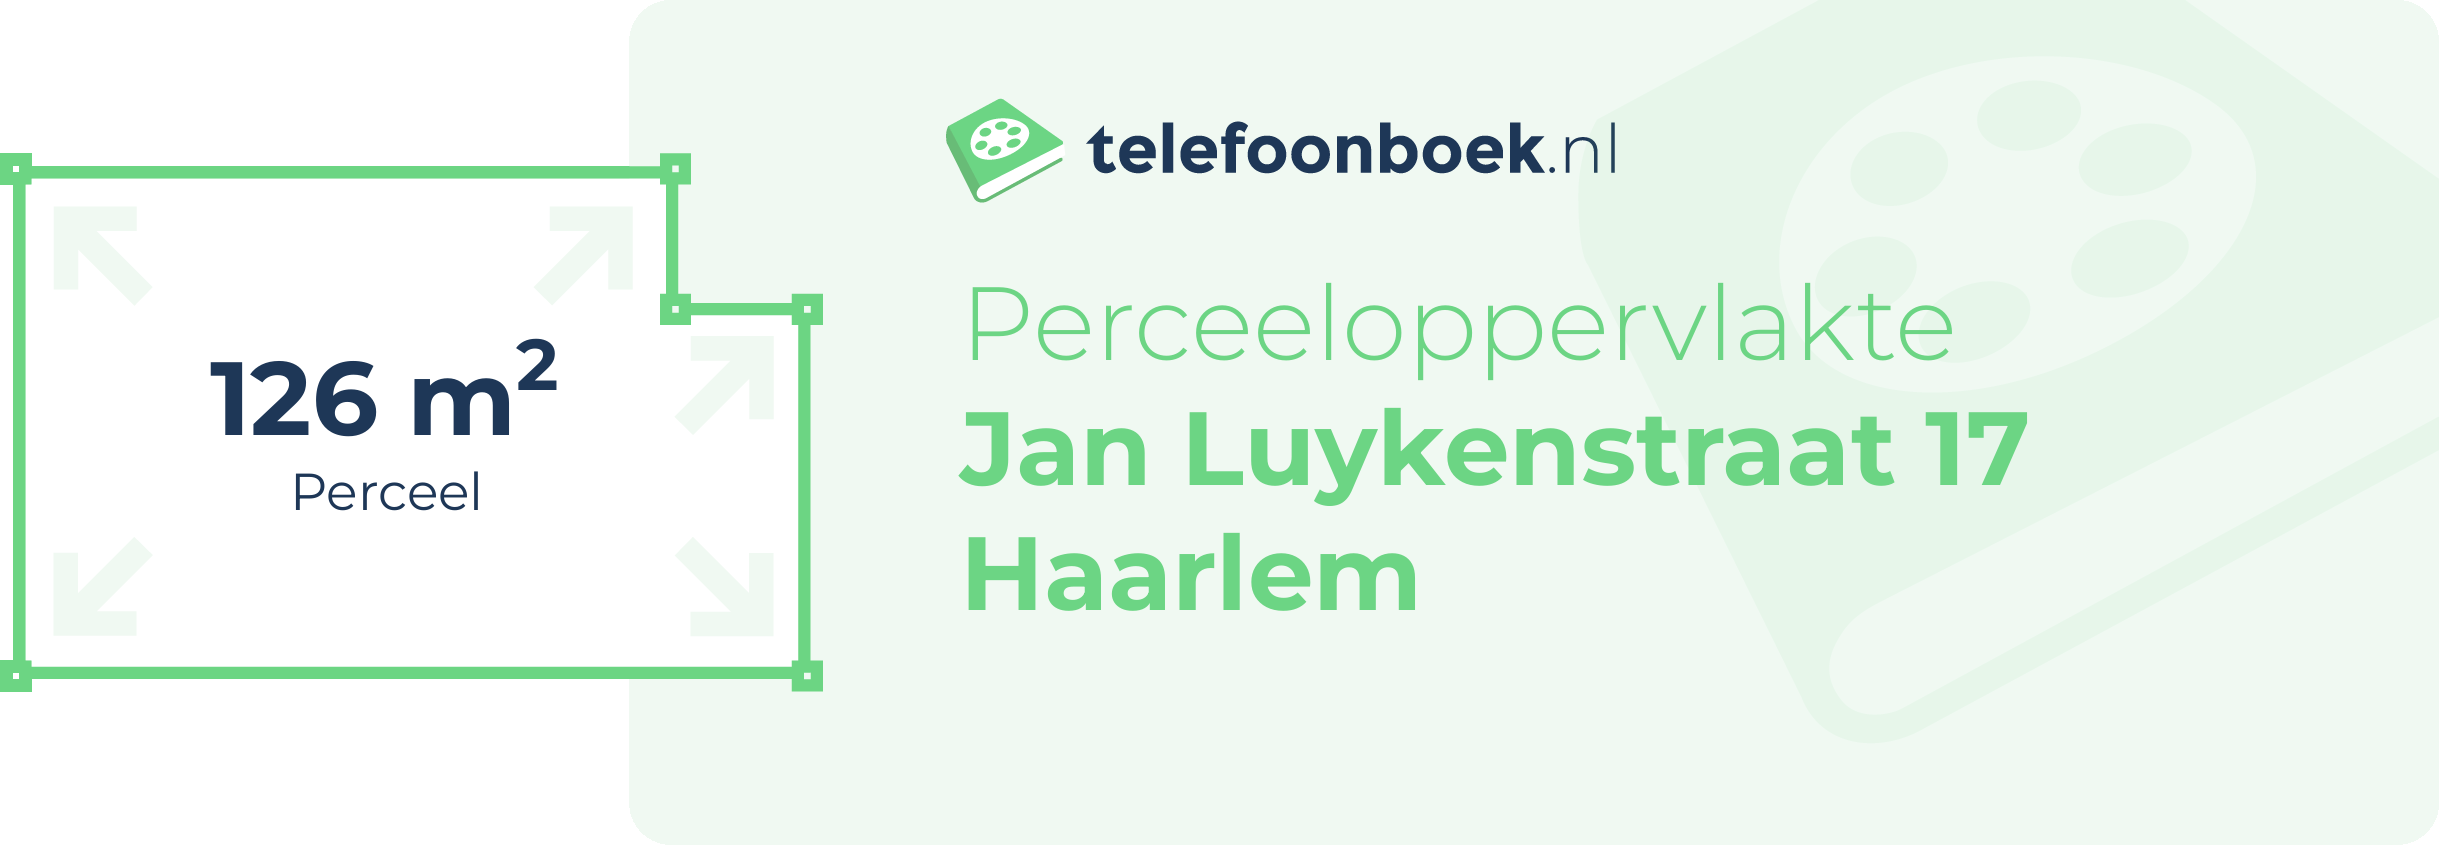 Perceeloppervlakte Jan Luykenstraat 17 Haarlem